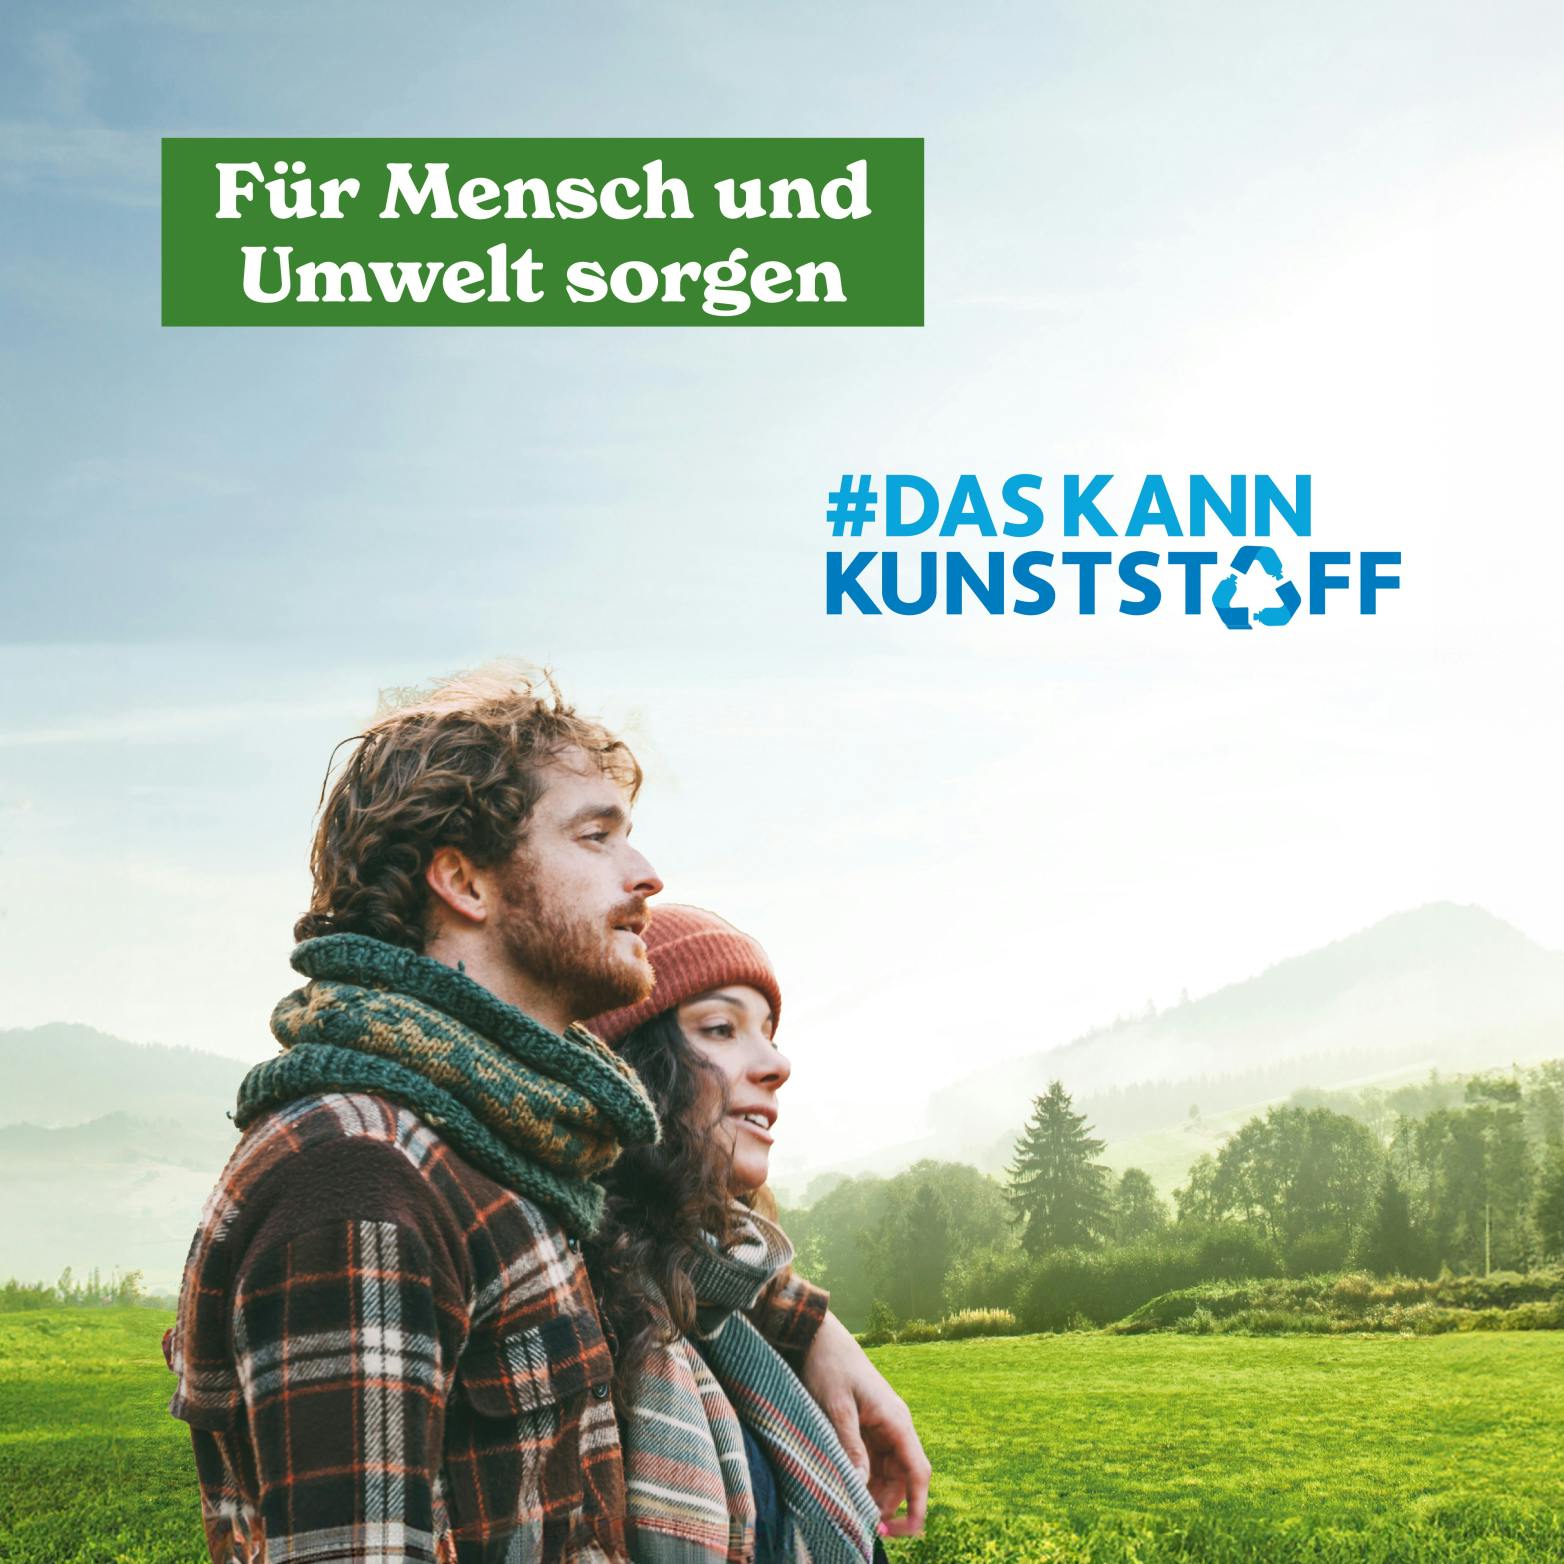 Sujet der #daskannkunststoff Kampagne in Deutschland im Hochformat